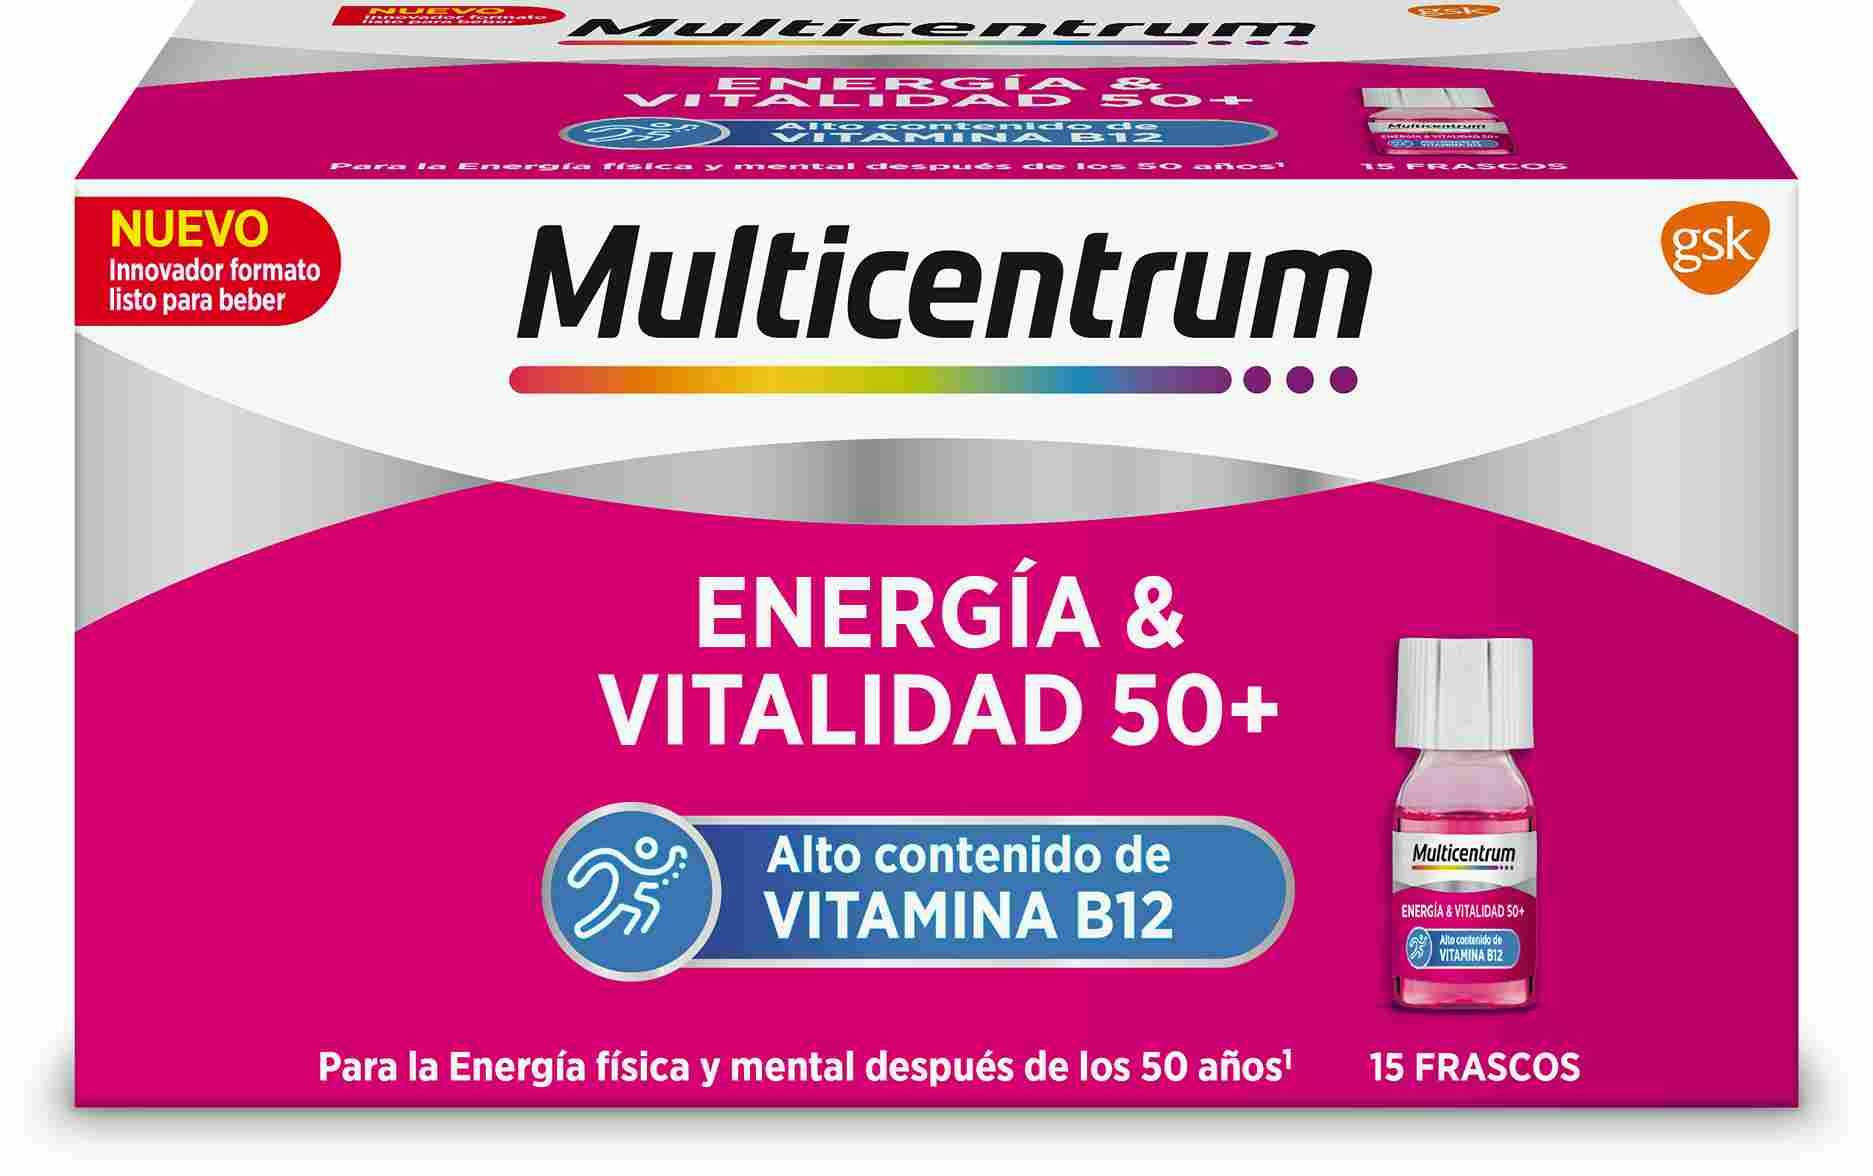 Multicentrum Energía & Vitalidad 50+